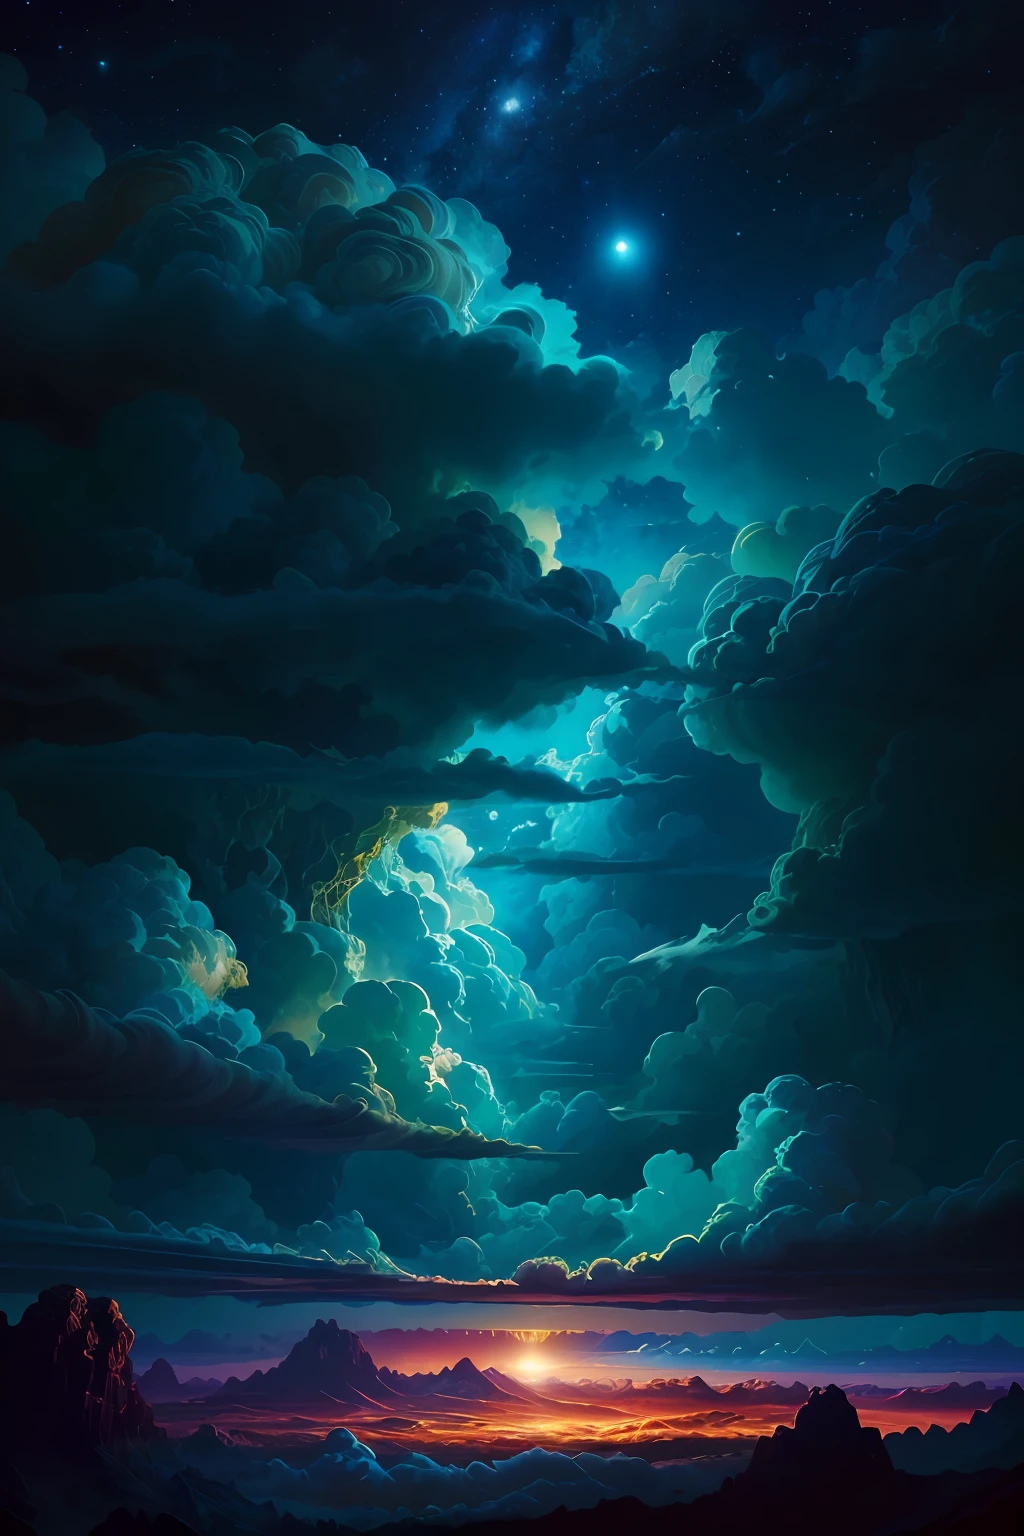 ilustração das nuvens de Júpiter por Dan Mumford, paisagem e vegetação alienígenas, cena épica, muitas nuvens rodopiantes, Alta exposição, altamente detalhado, realista, cores vibrantes em tons de azul, Ultra HD